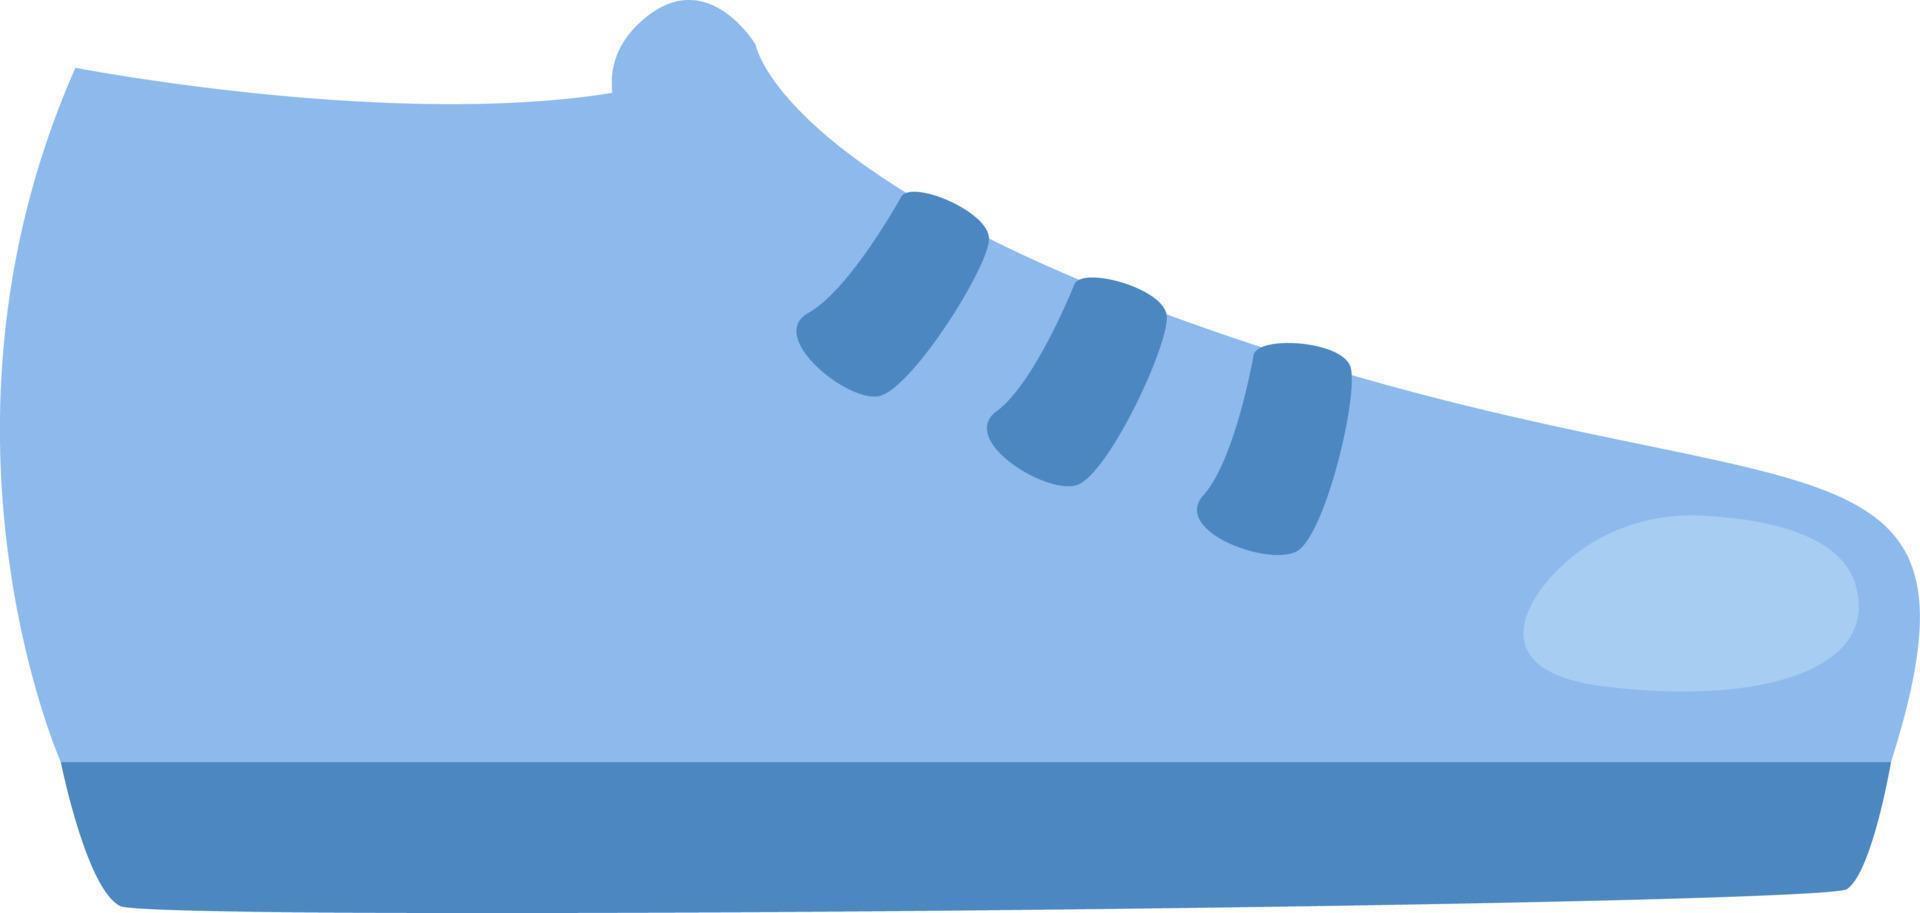 zapatillas de deporte azules, ilustración, vector, sobre fondo blanco. vector